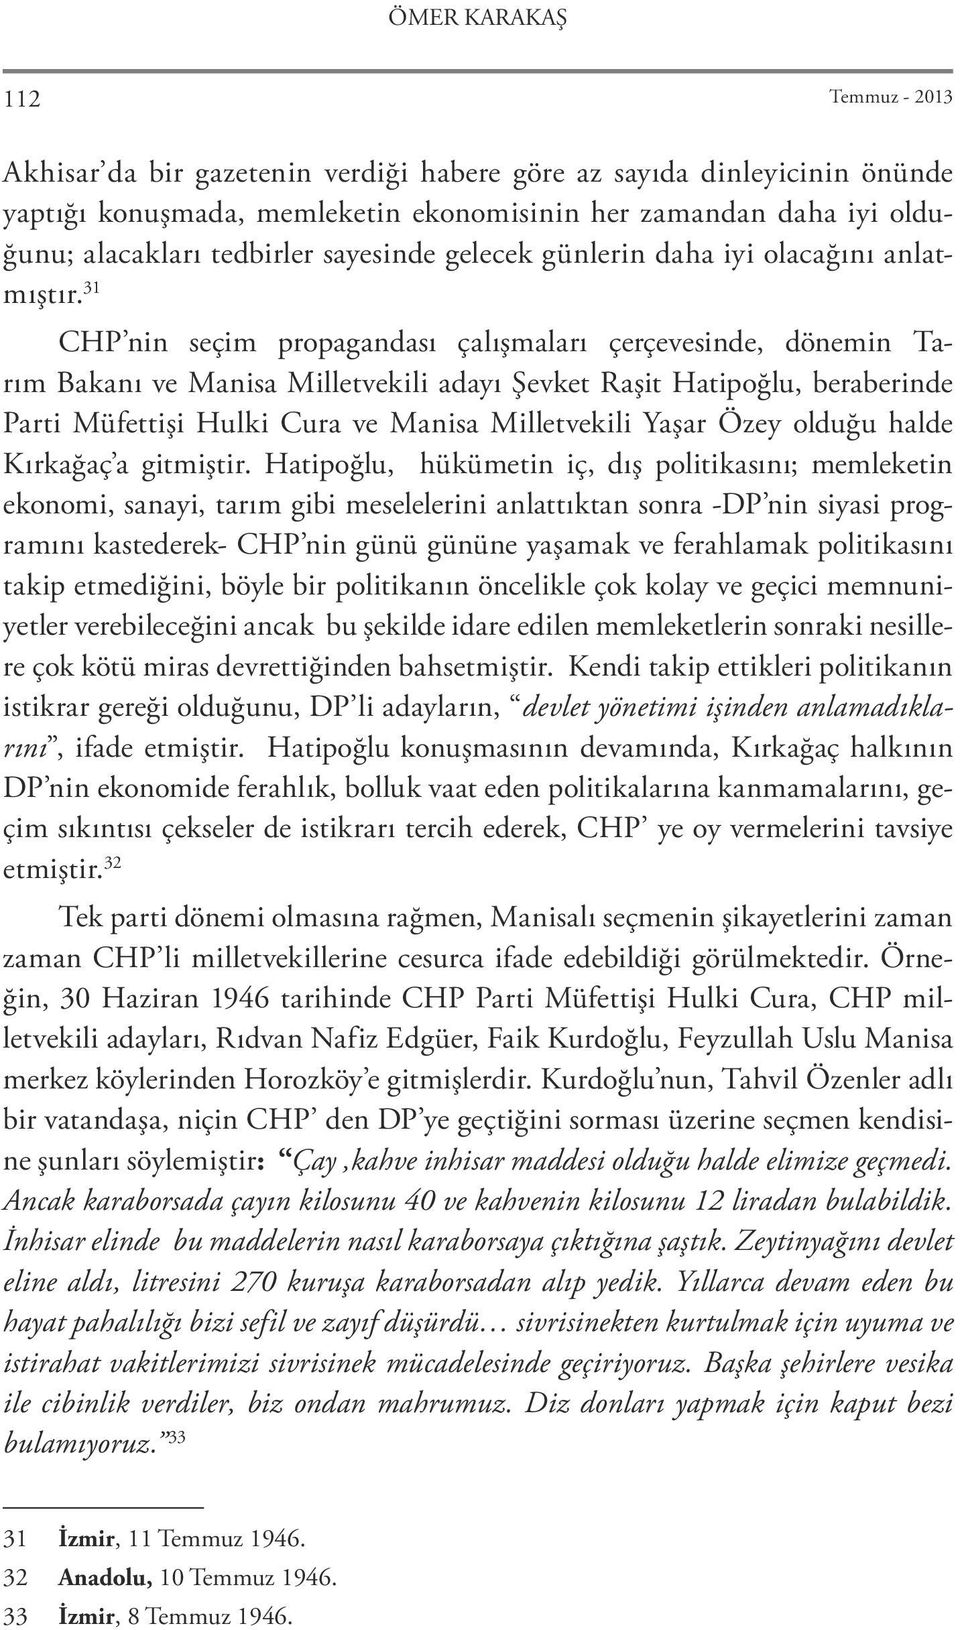 31 CHP nin seçim propagandası çalışmaları çerçevesinde, dönemin Tarım Bakanı ve Manisa Milletvekili adayı Şevket Raşit Hatipoğlu, beraberinde Parti Müfettişi Hulki Cura ve Manisa Milletvekili Yaşar